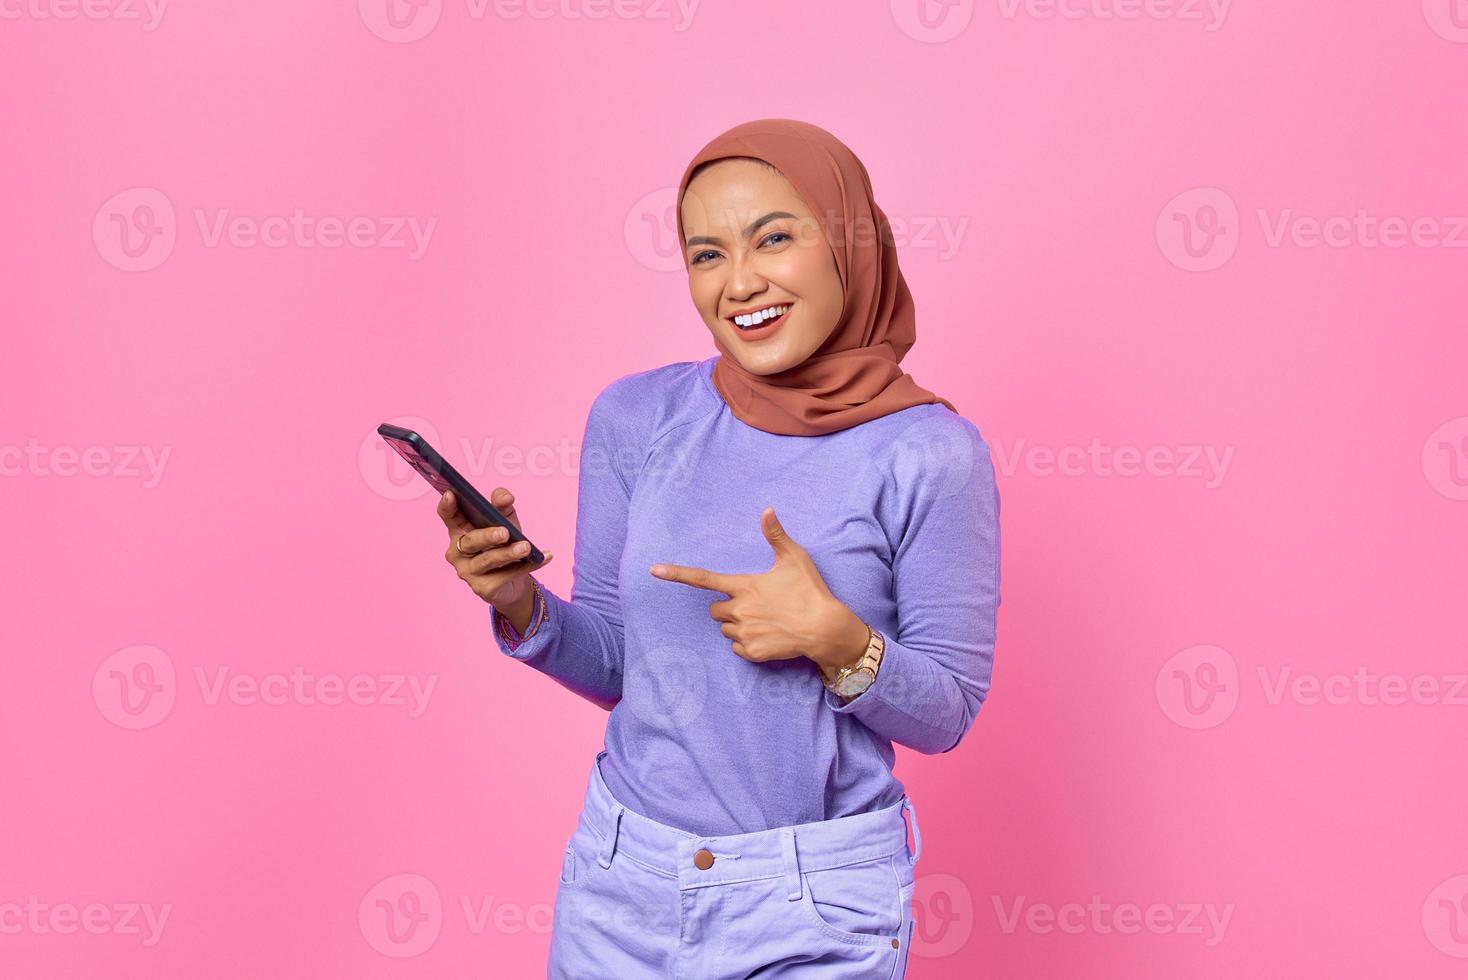 retrato, de, sonriente, joven, mujer asiática, señalar con el dedo, en, un, teléfono móvil, en, fondo rosa foto